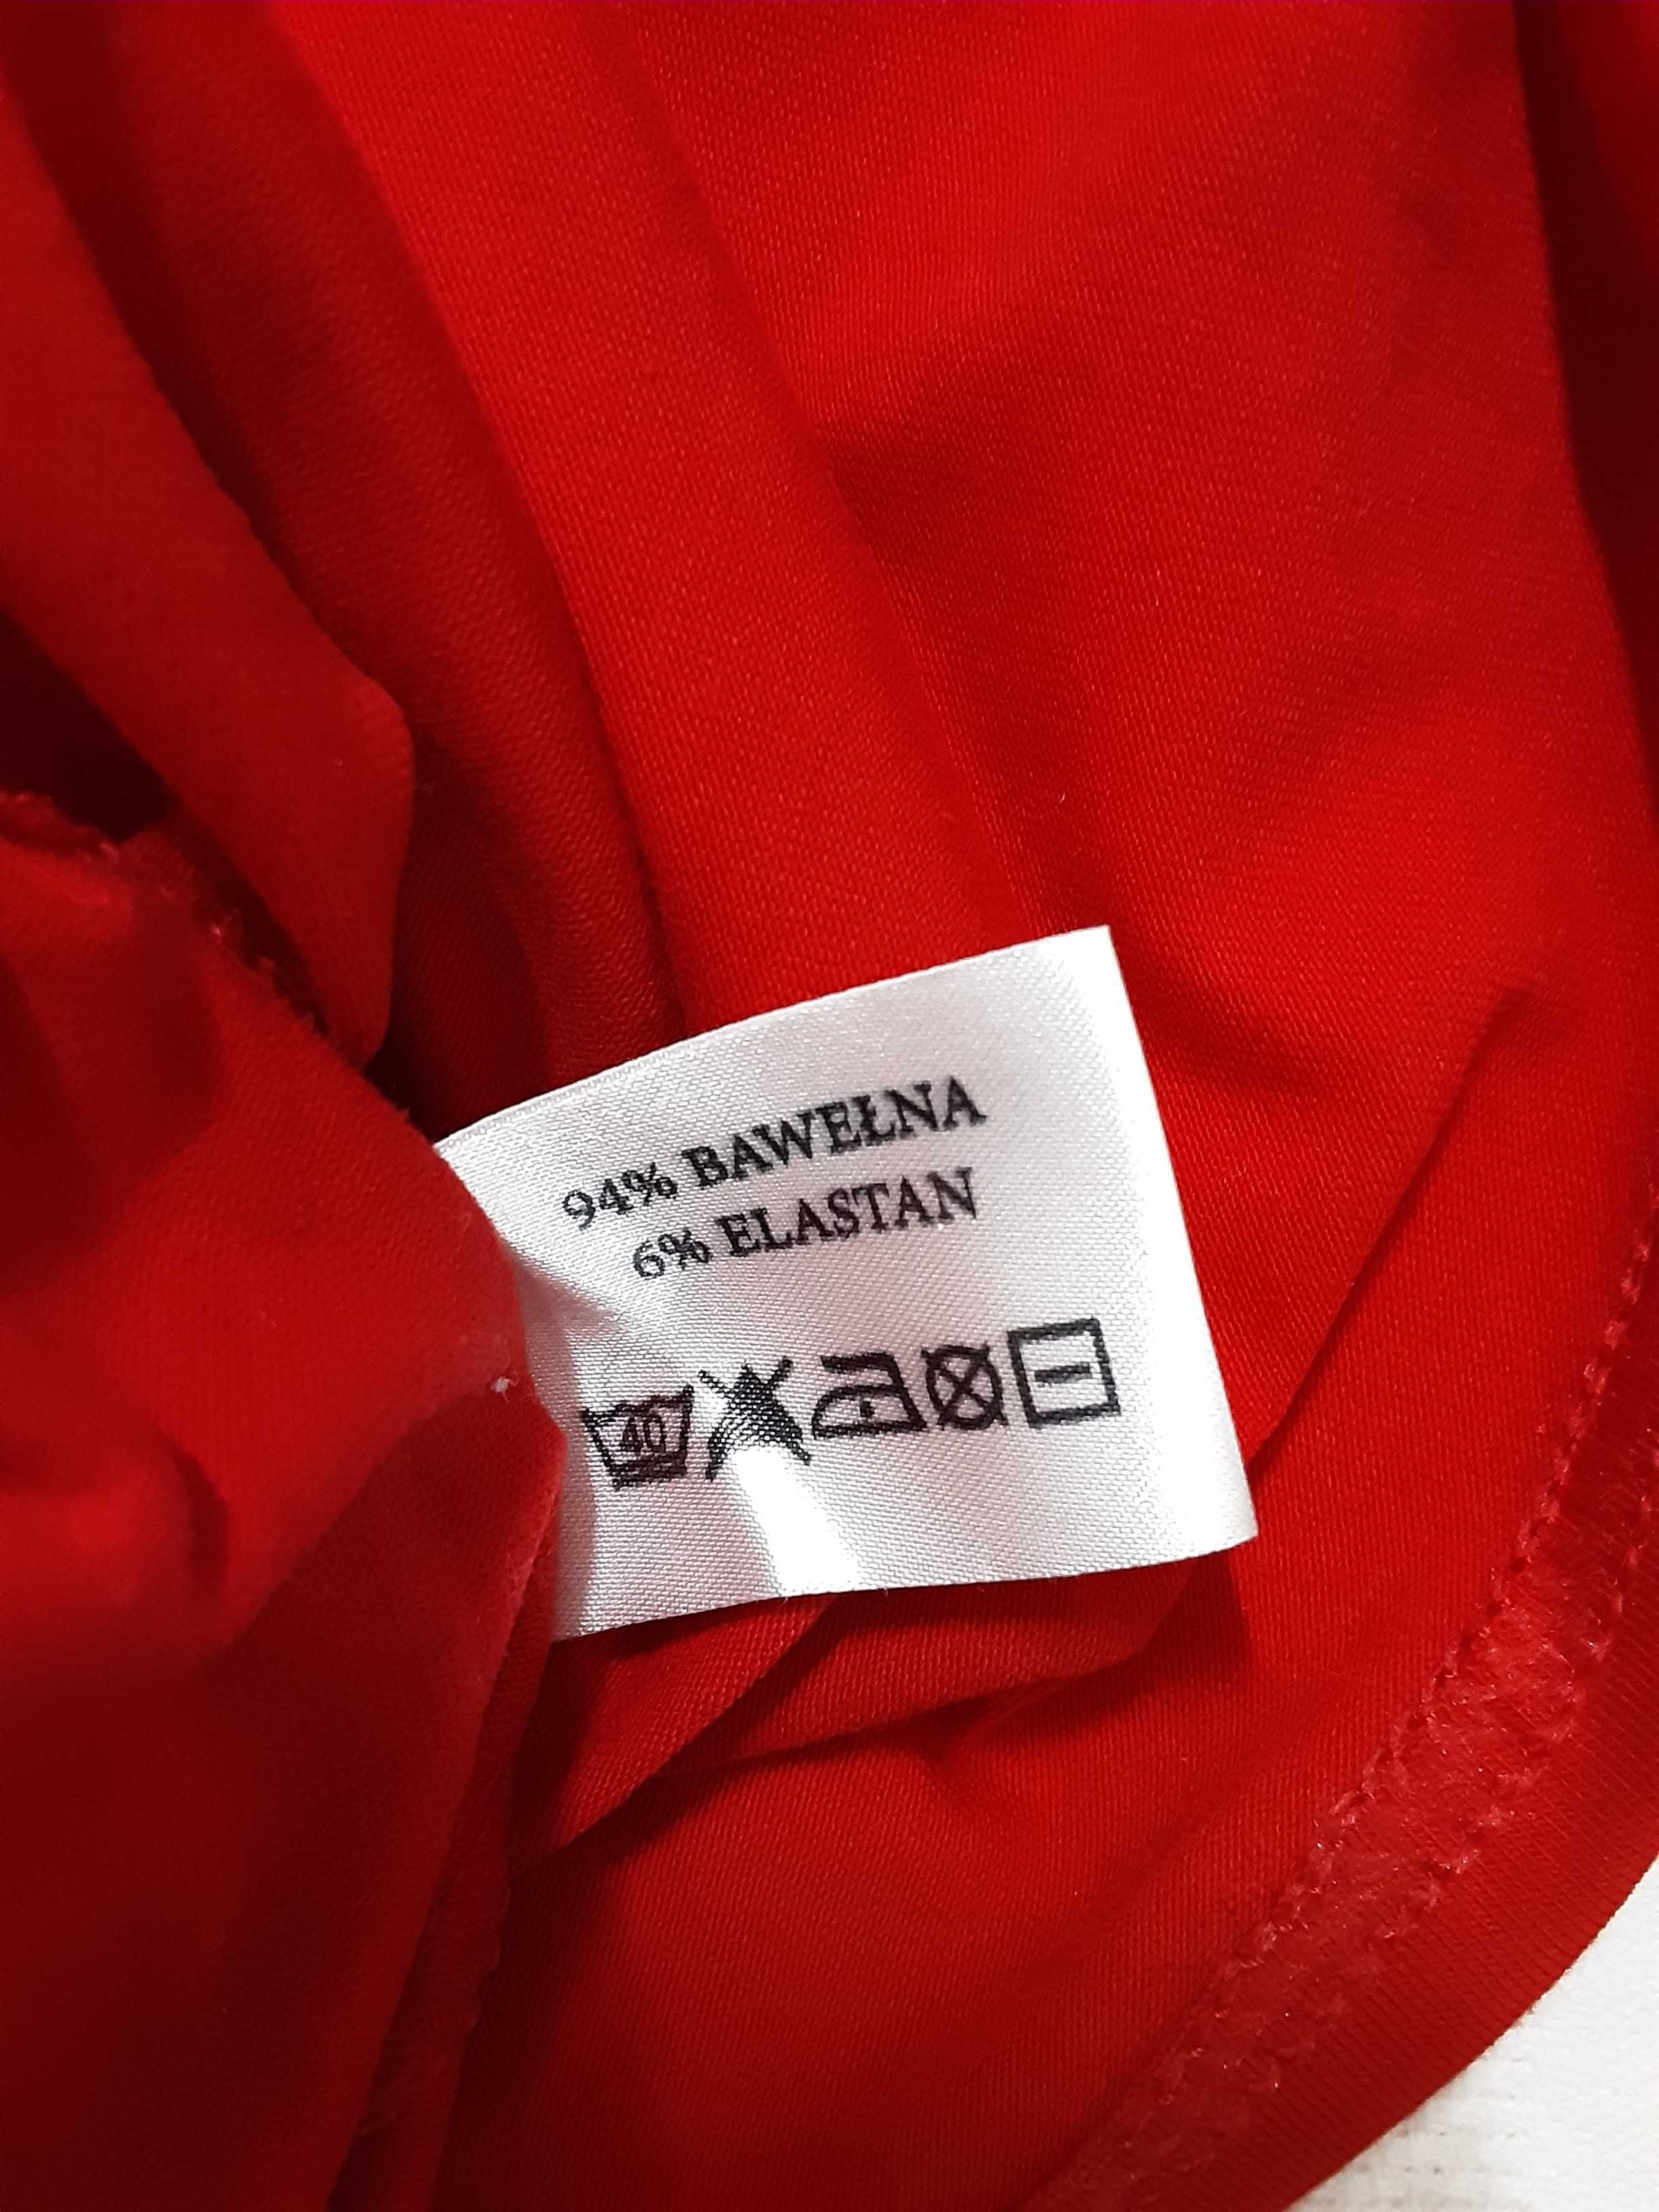 M 38 t-shirt bluzka koszulka krótki rękaw czerwona TMC- Moda